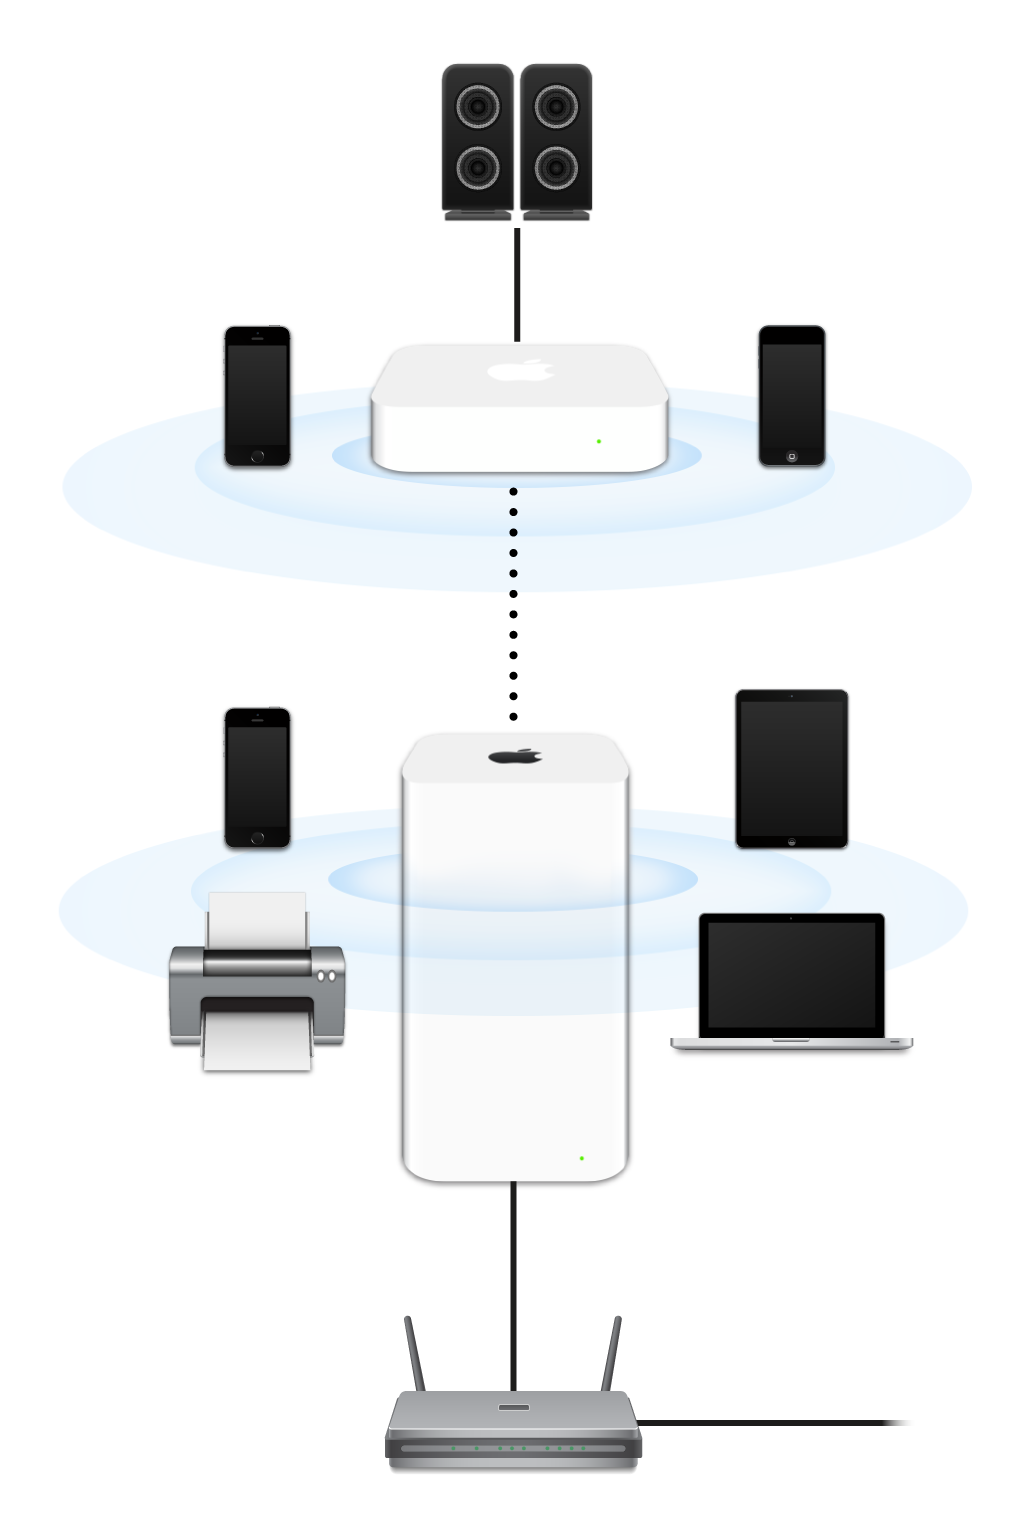 Una red ampliada, incluye una AirPort Extreme y una AirPort Express, conectada a un módem y transmitiendo a diferentes dispositivos.